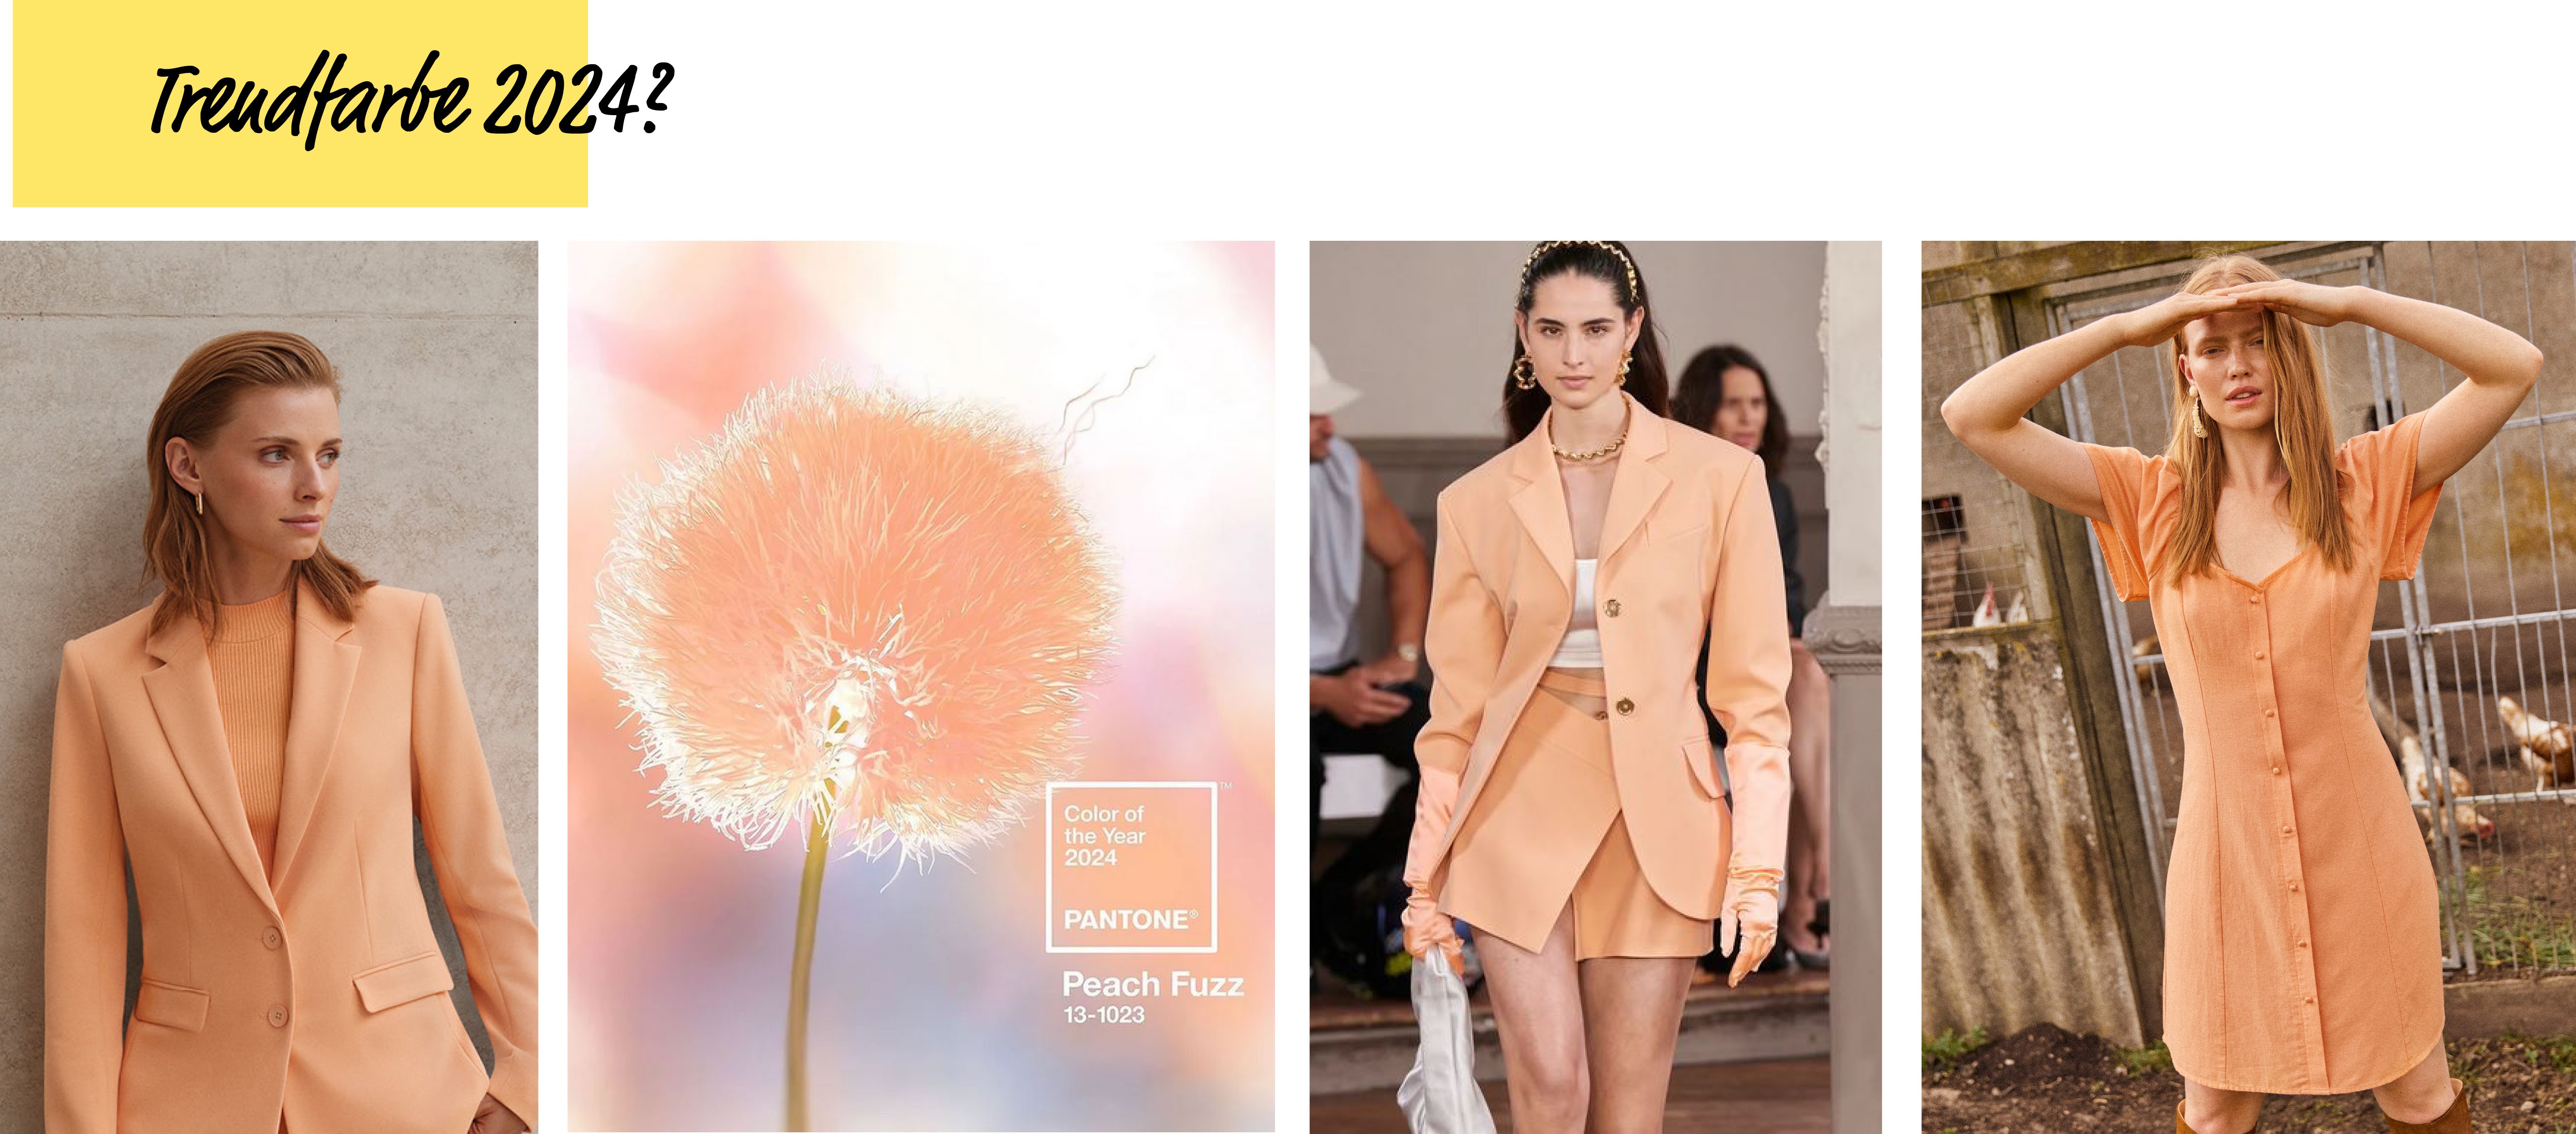 „Peach Fuzz“ ist die Trendfarbe des Jahres 2024!